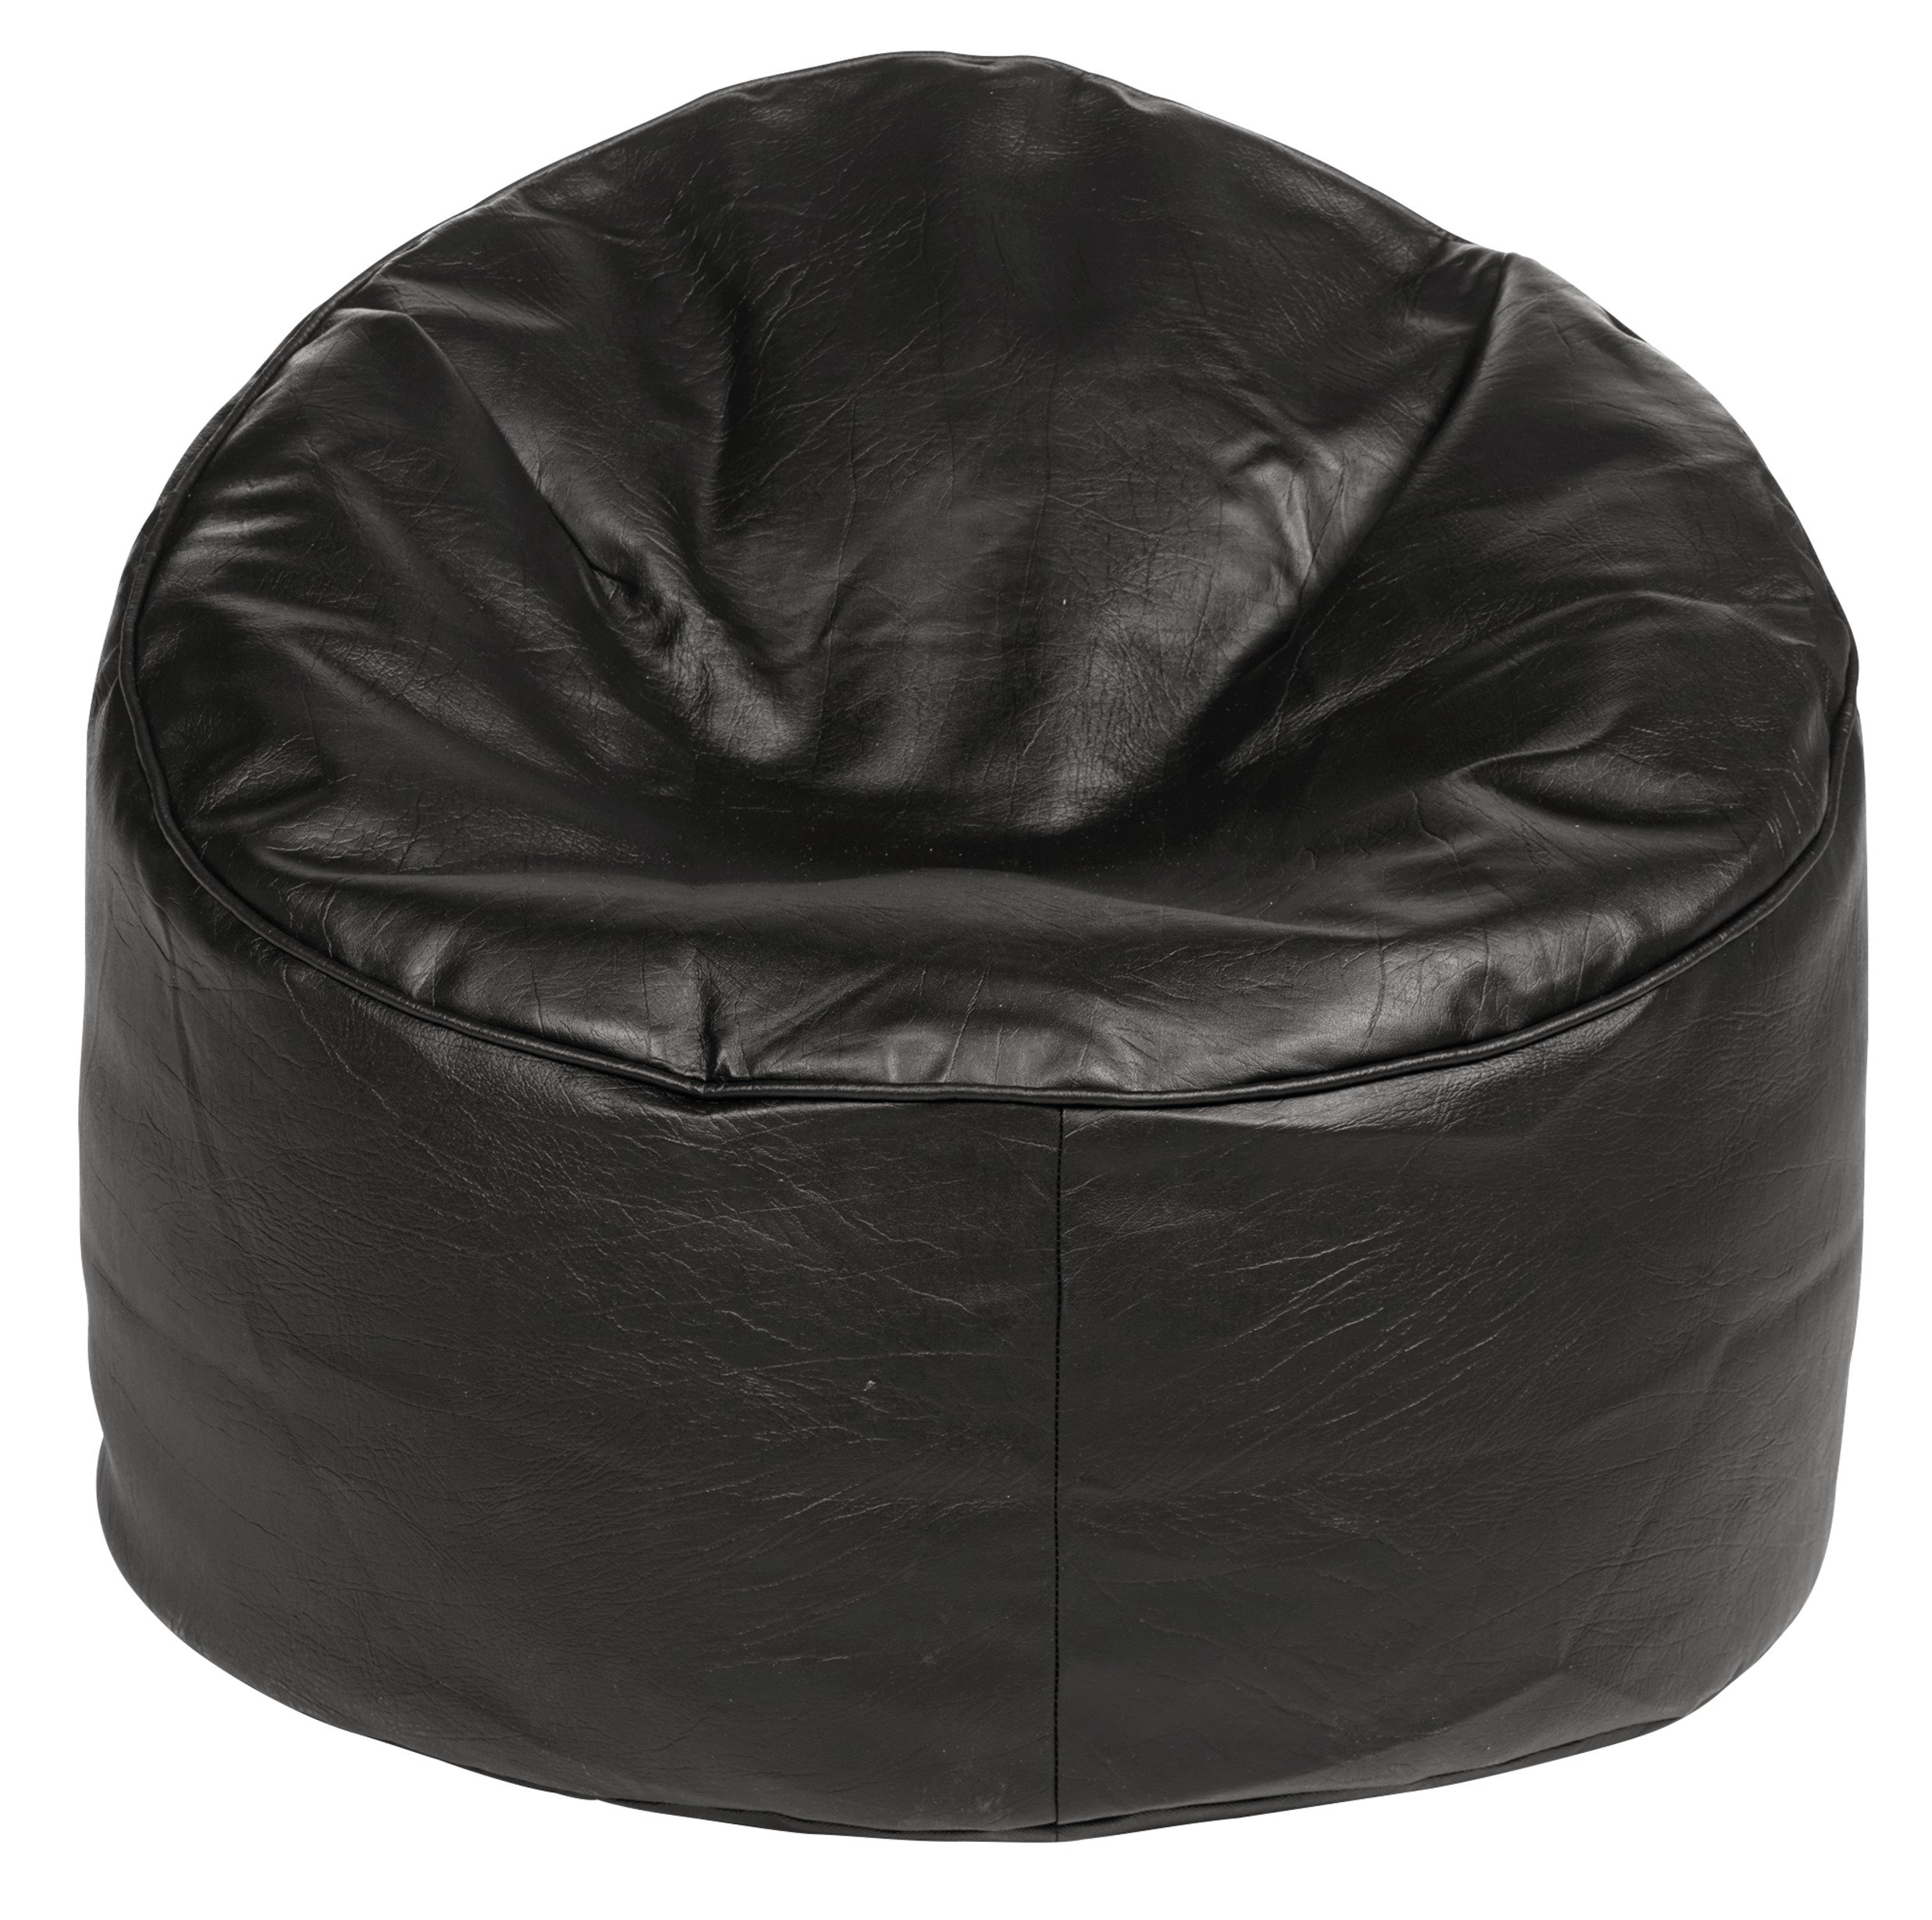 Argos Home Faux Leather Bean Bag Chair - Black